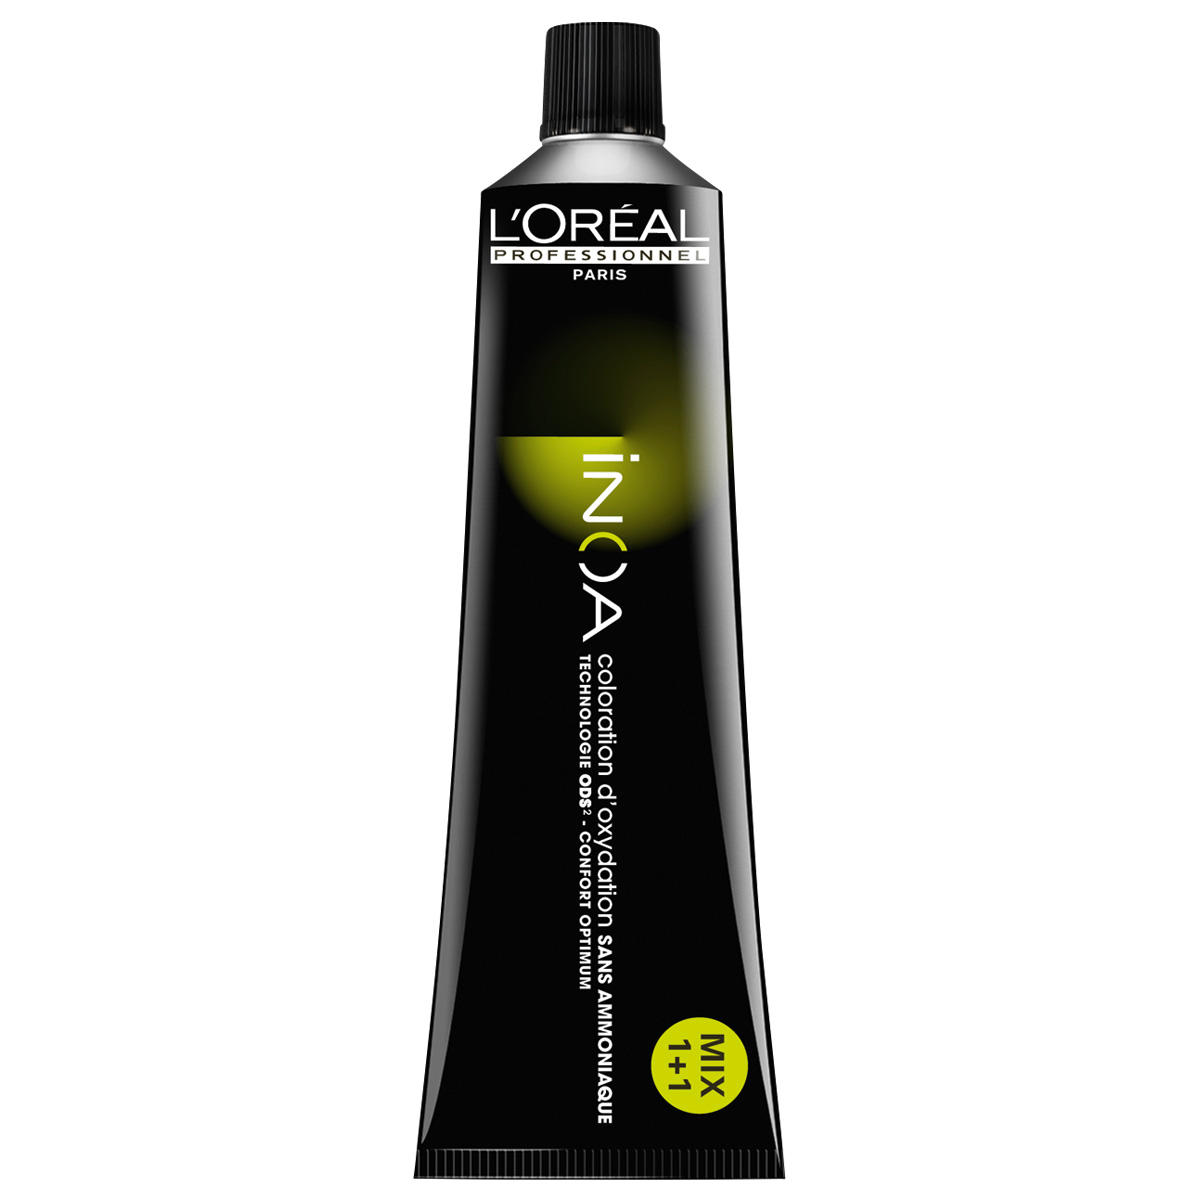 L'Oréal Professionnel Paris Coloration 4,15 middelbruin essen mahonie, tube 60 ml